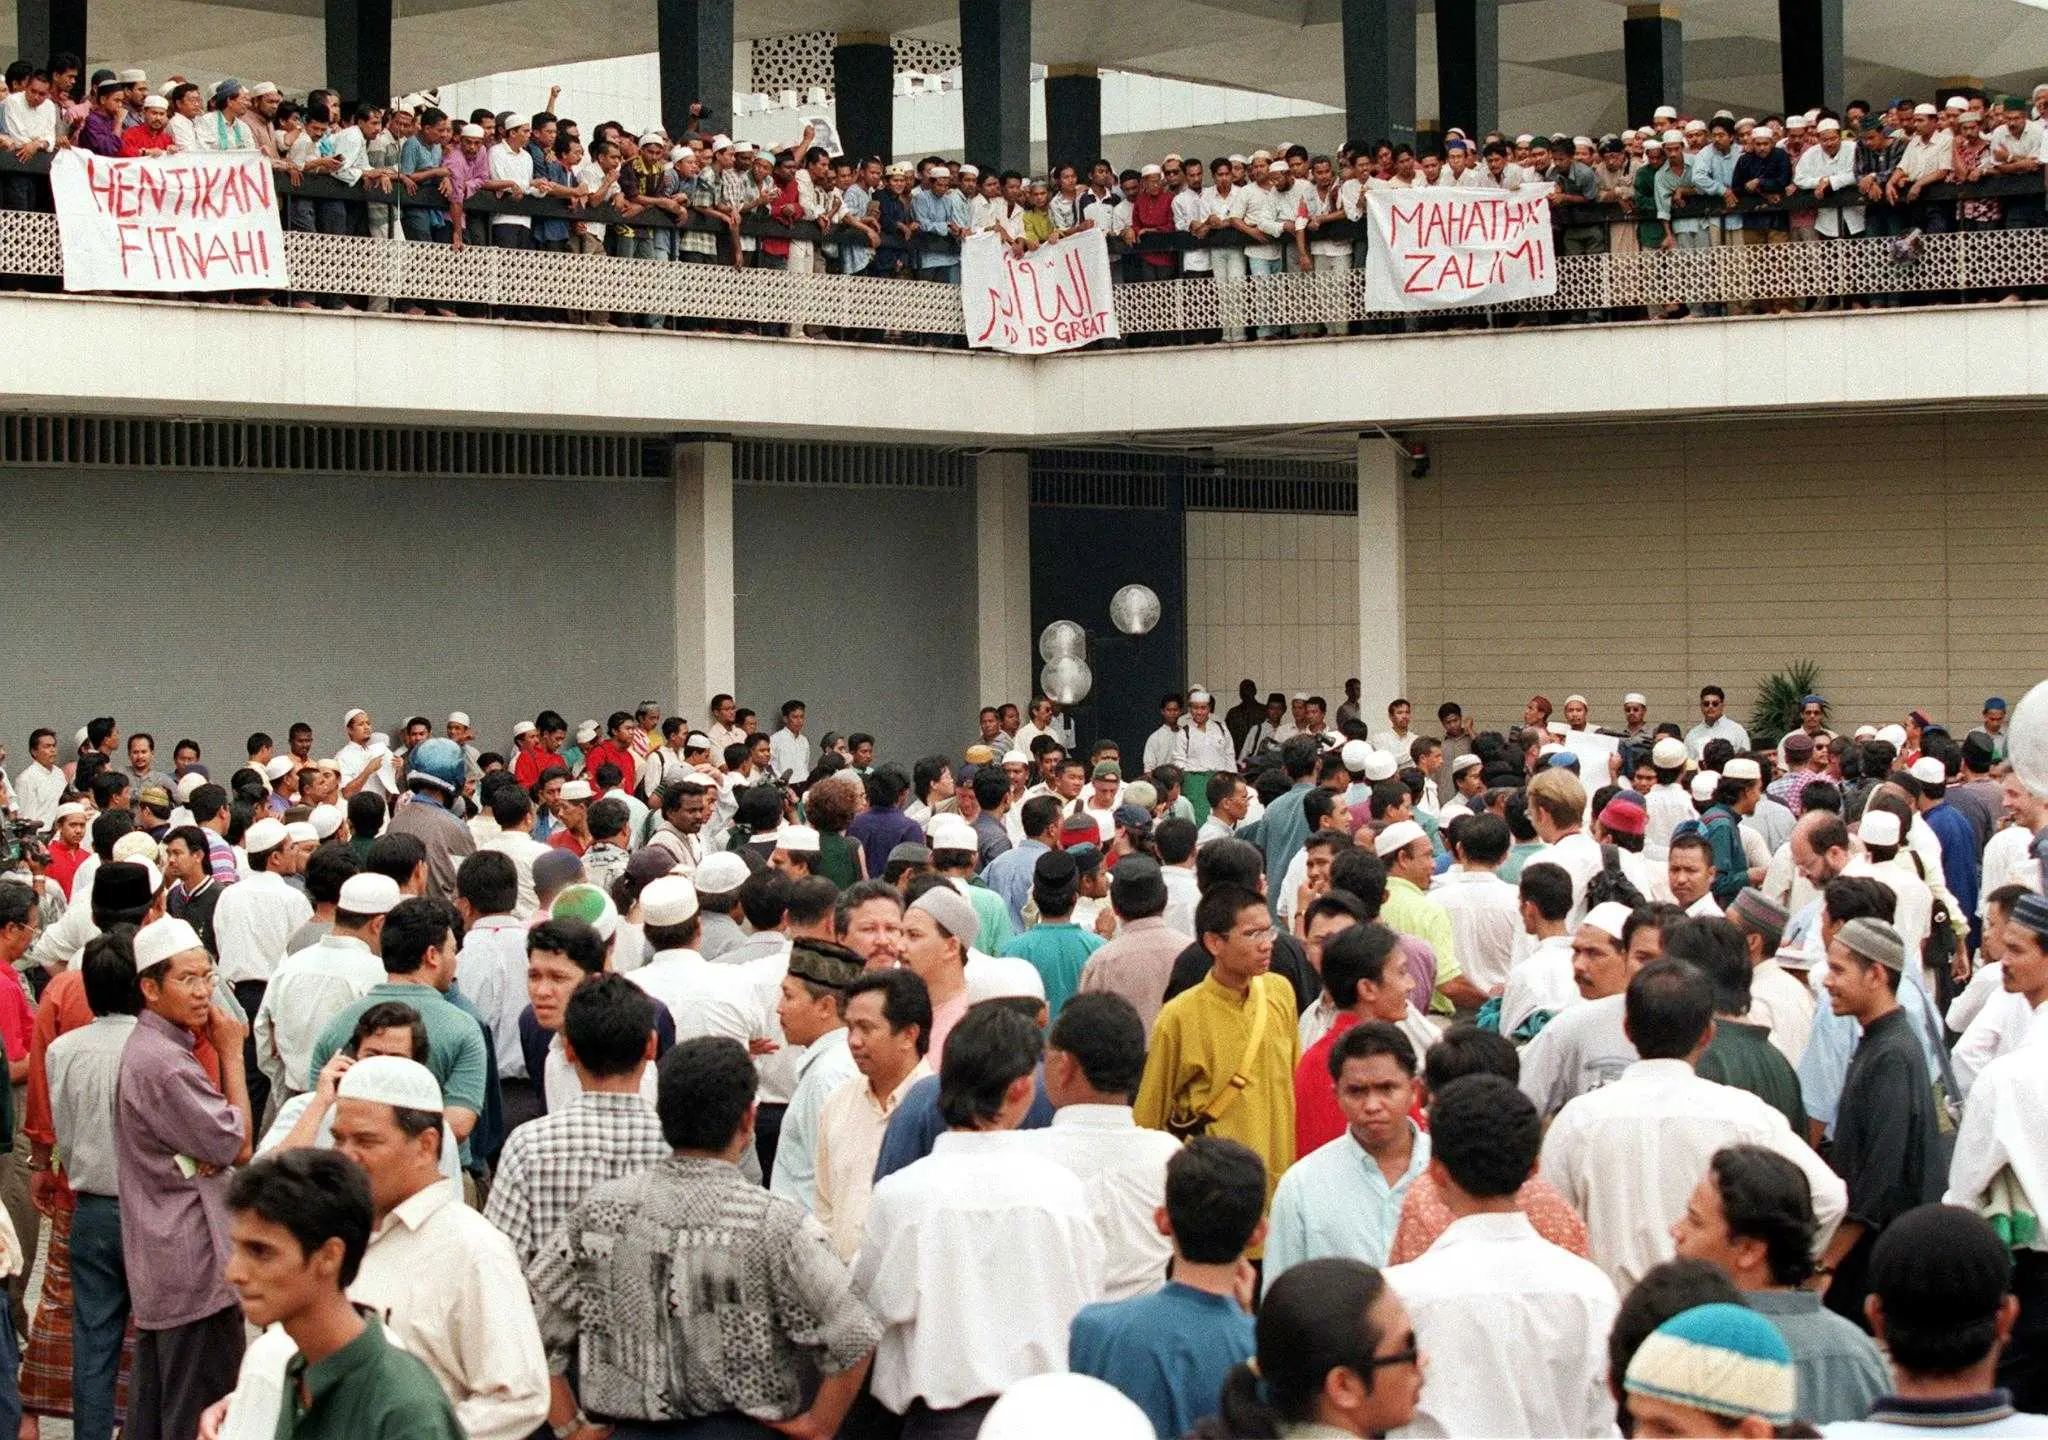 Sebahagian penyokong Anwar Ibrahim berdemonstrasi di perkarangan Masjid Negara ketika kemuncak Reformasi bawaan Anwar di Kuala Lumpur pada 25 September, 1998. Penyokongnya membentangkan sepanduk berbunyi 'Hentikan Fitnah' dan 'Mahathir Zalim'. Gambar: AFP